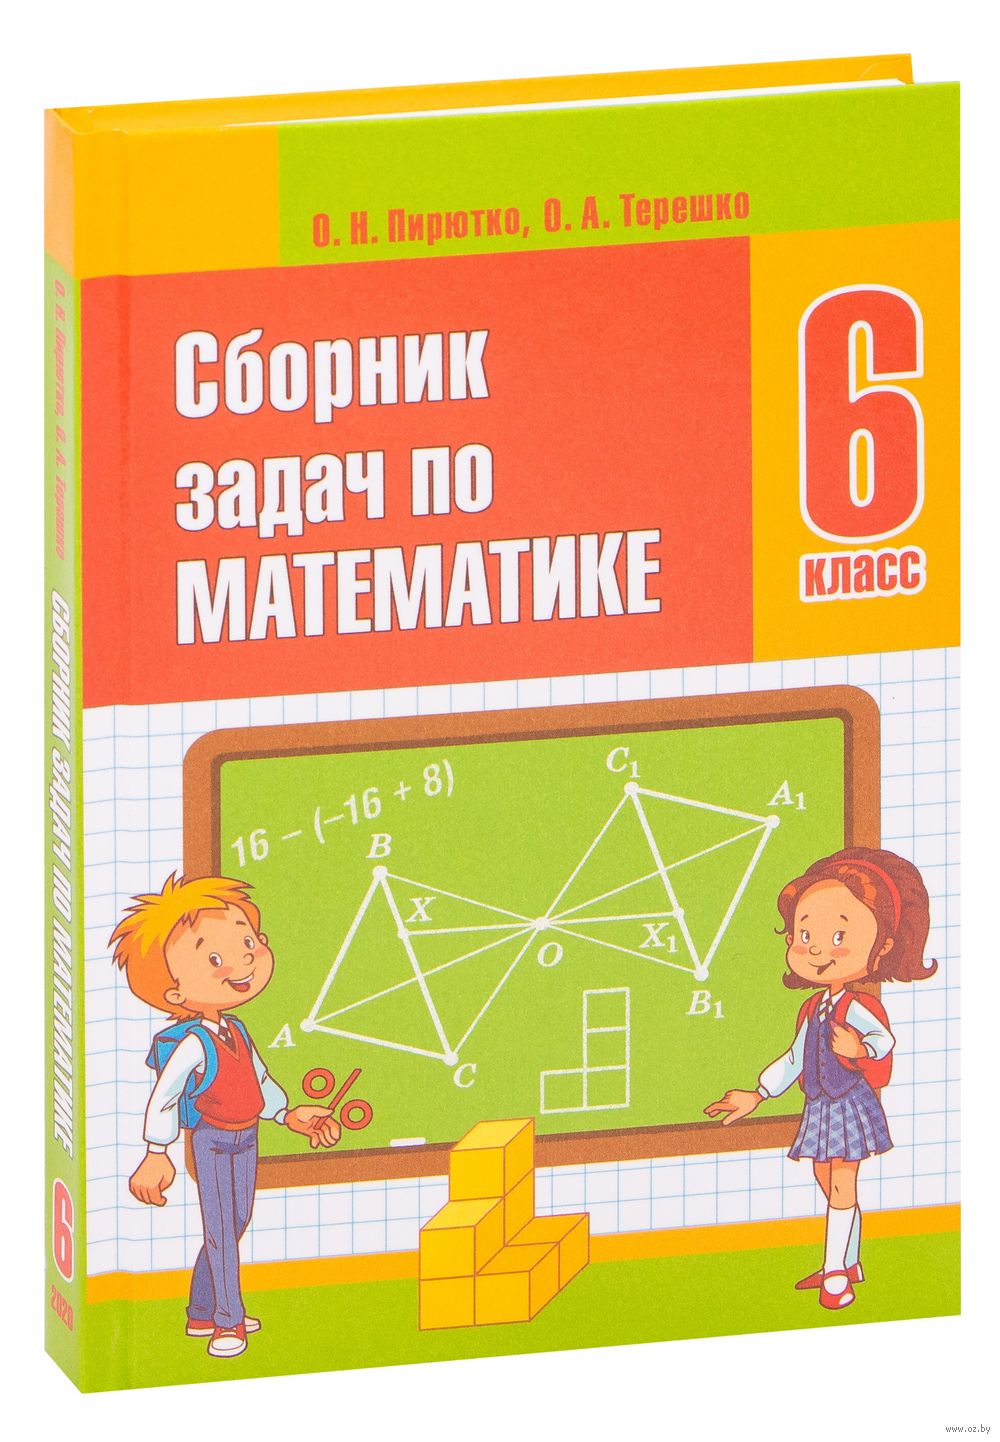 Сборник Задач По Математике. 6 Класс О. Пирютко, Оксана Терешко.